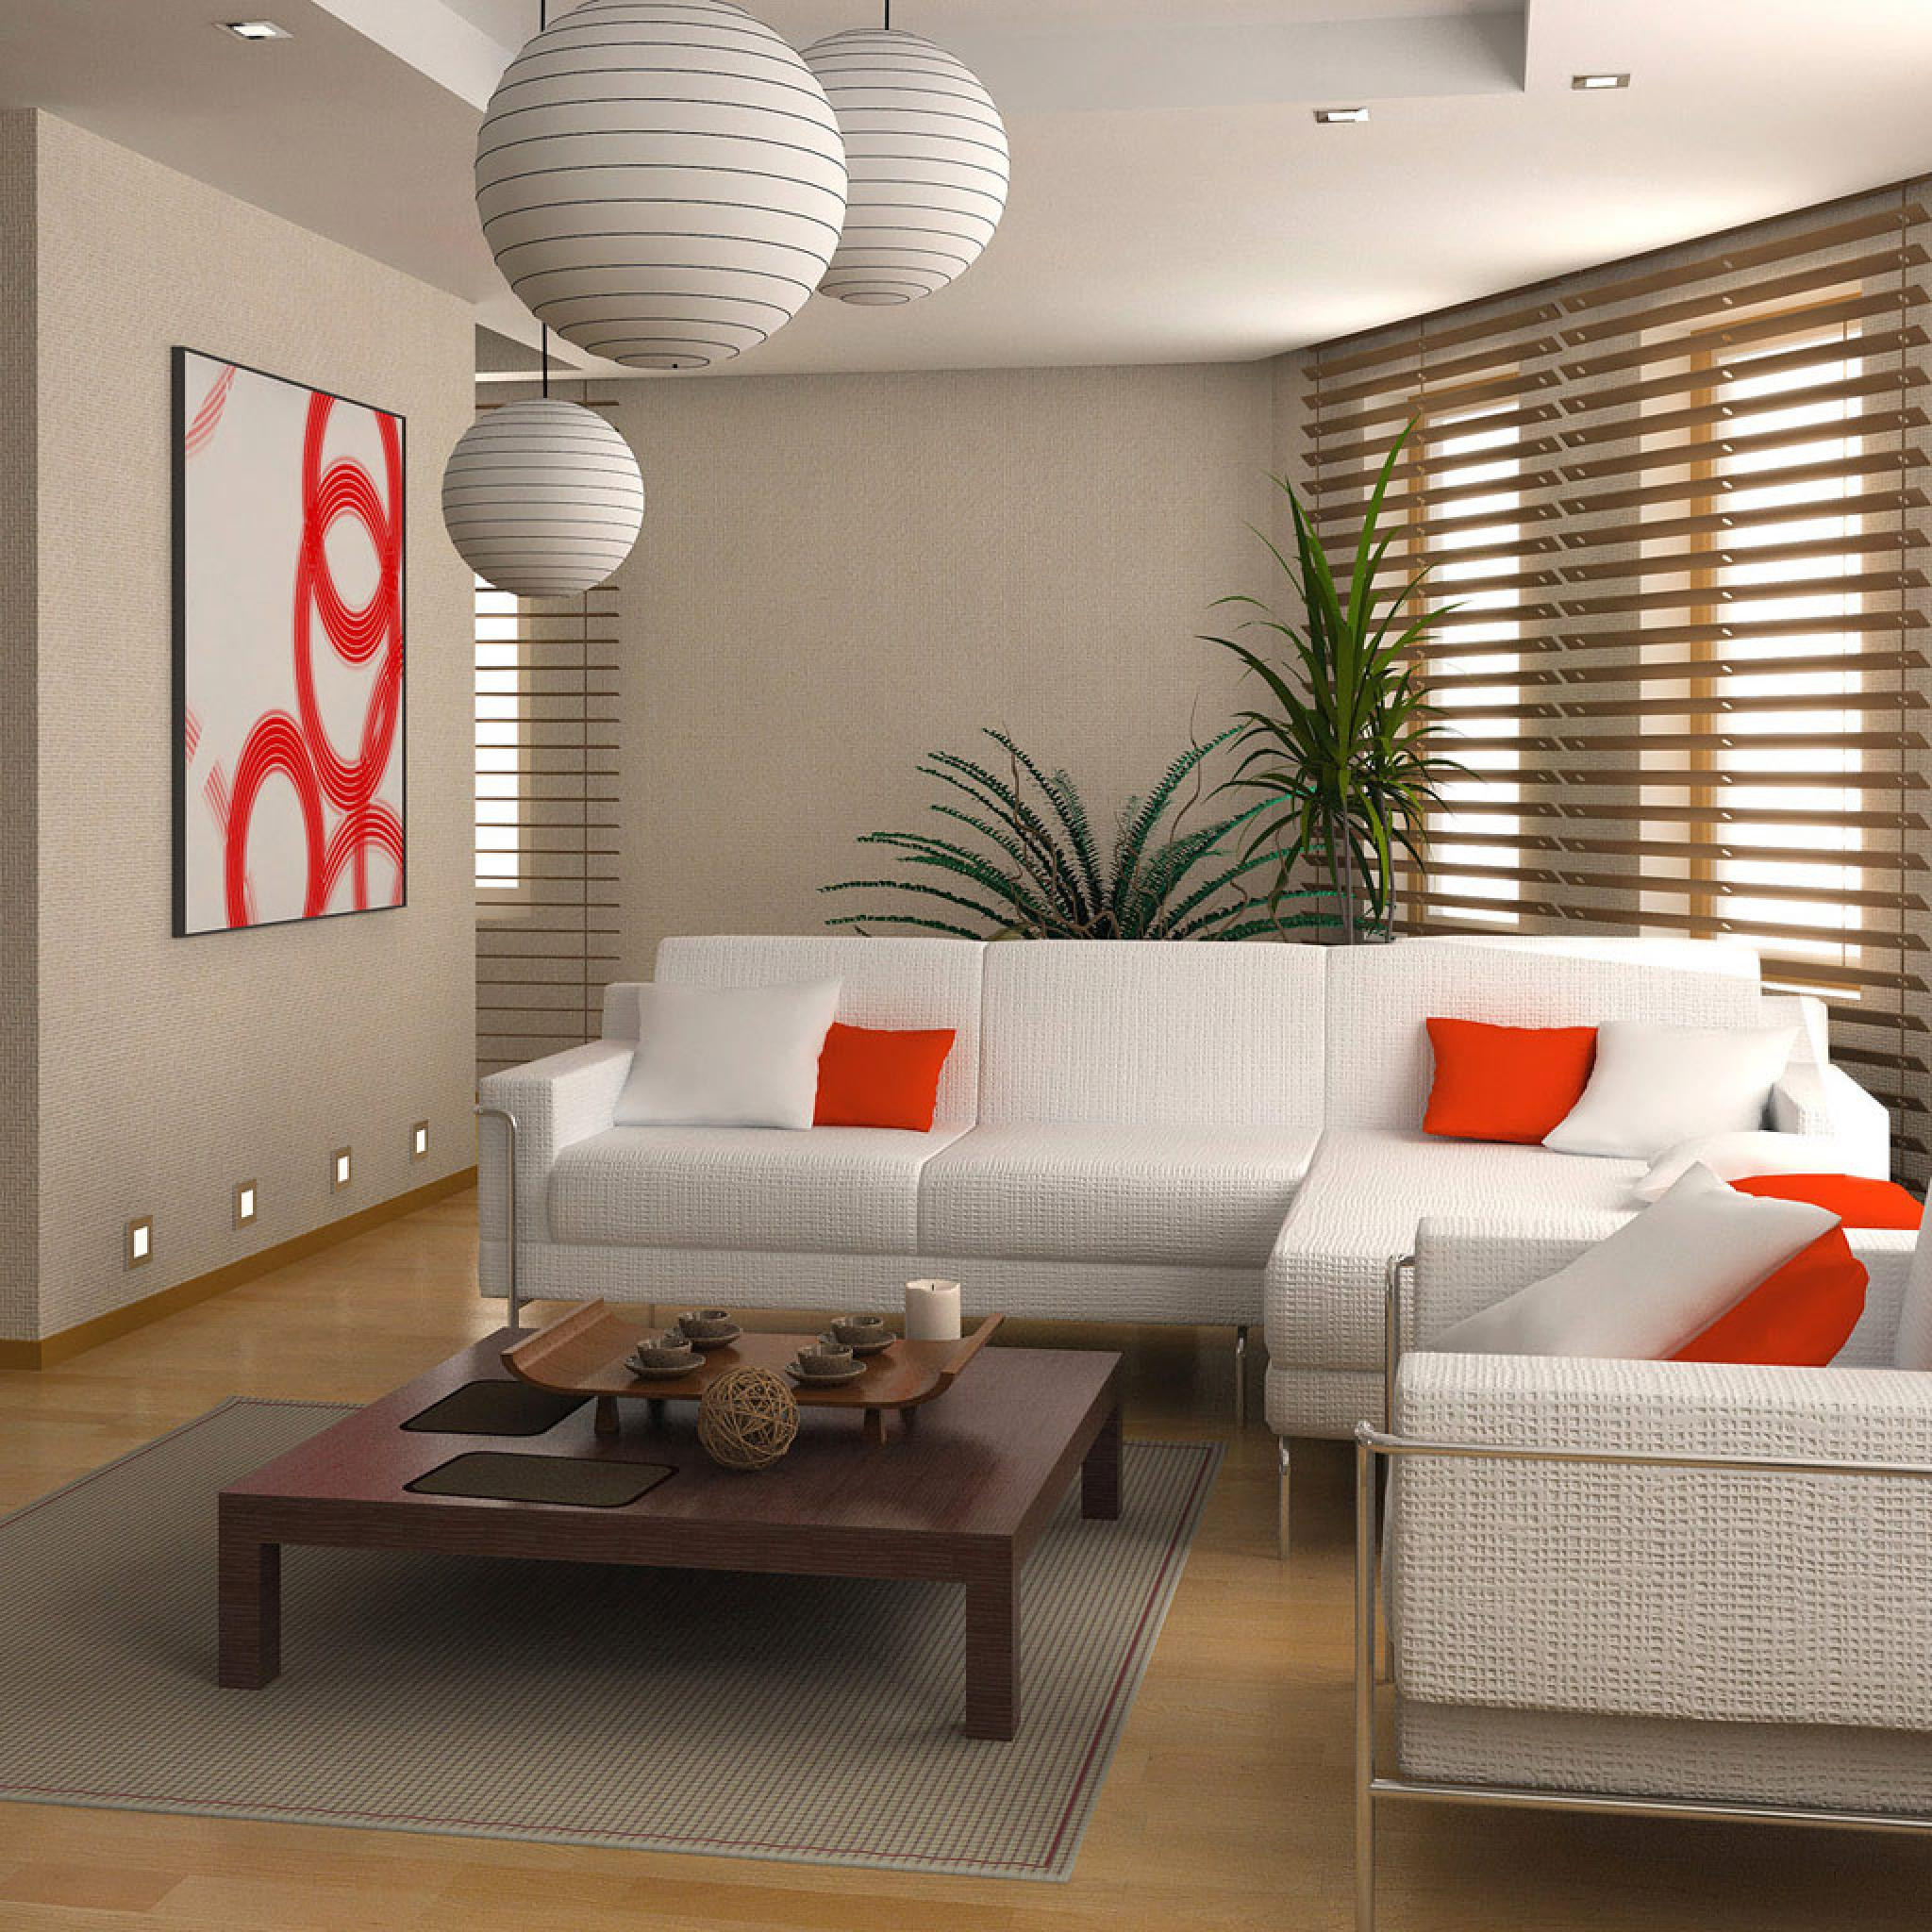 Apartment Living Room Designs Ideas
 Miscellaneous Modern Living Room Interior Design Ideas